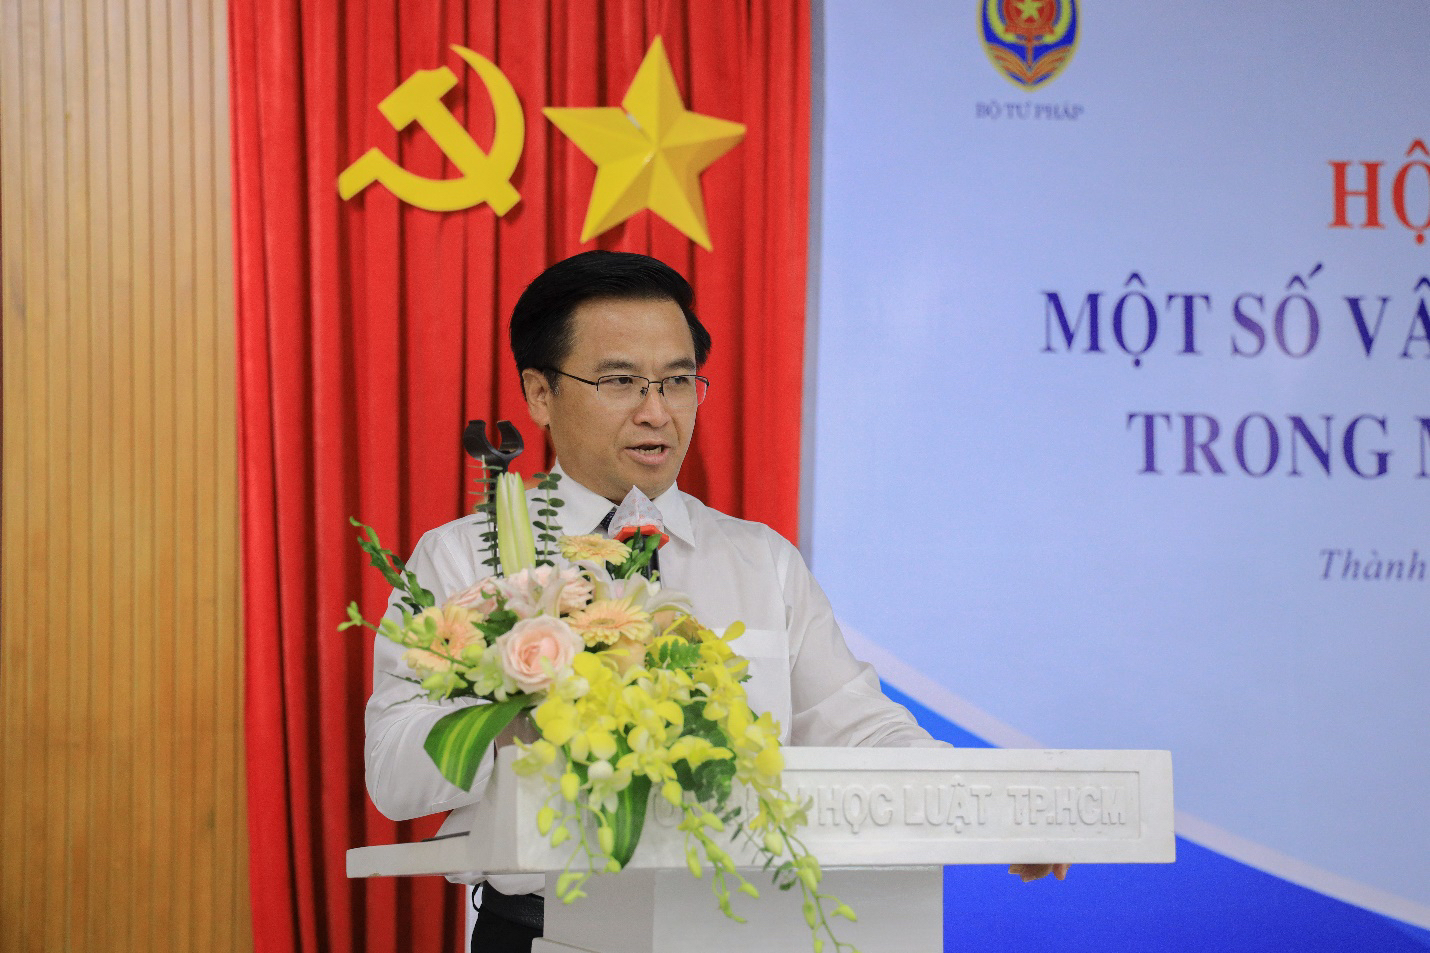 PGS.TS. Bùi Xuân Hải – đại diện đoàn Chủ tọa phát biểu khai mạc Hội thảo